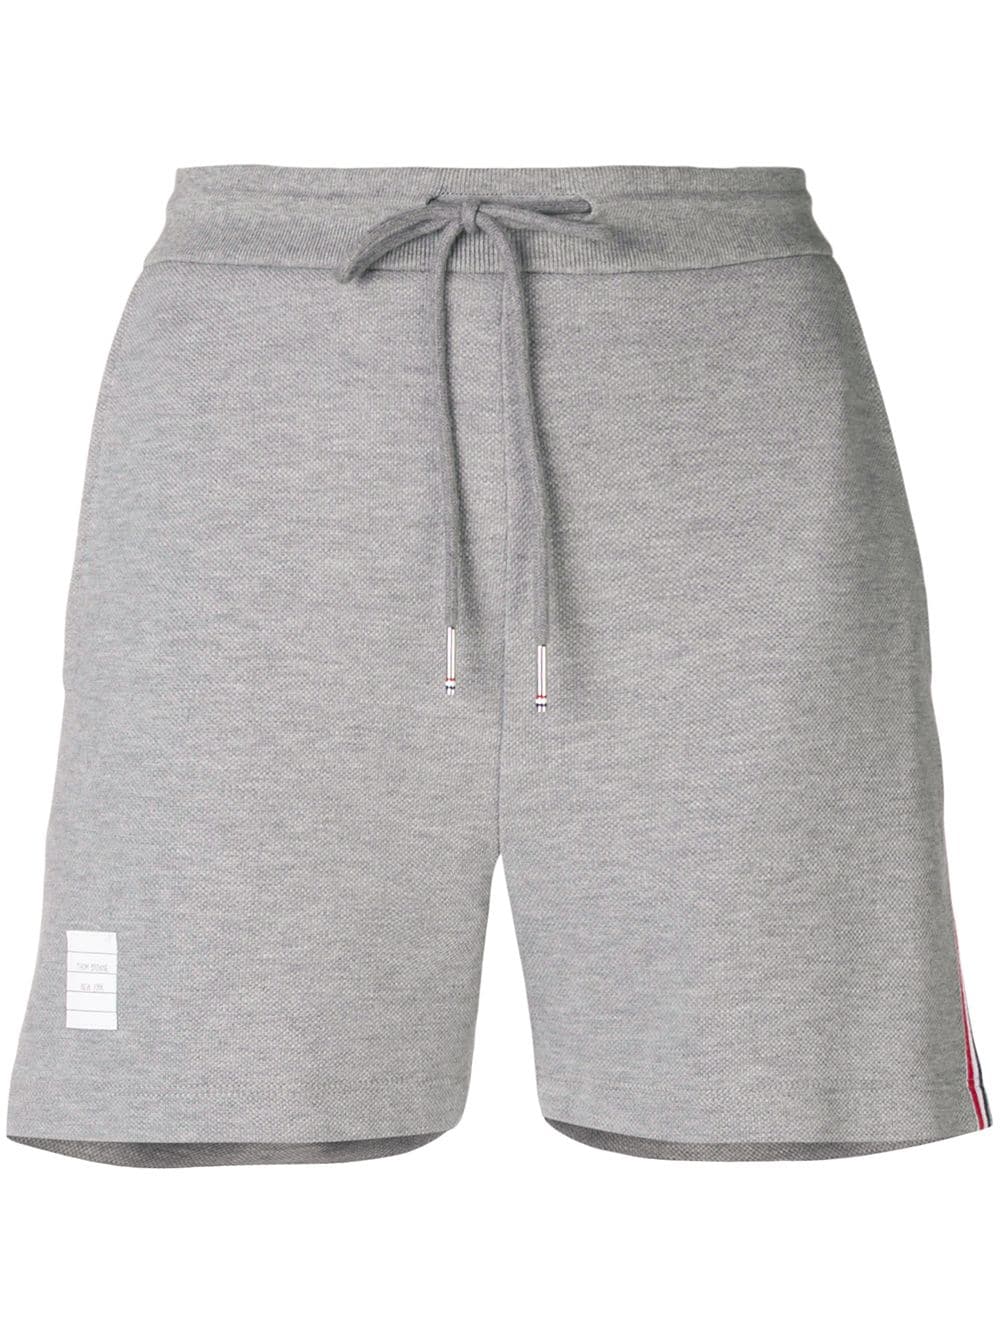 Mid-Thigh Shorts W/ Rwb Side Stripe In Classic Pique Light Grey